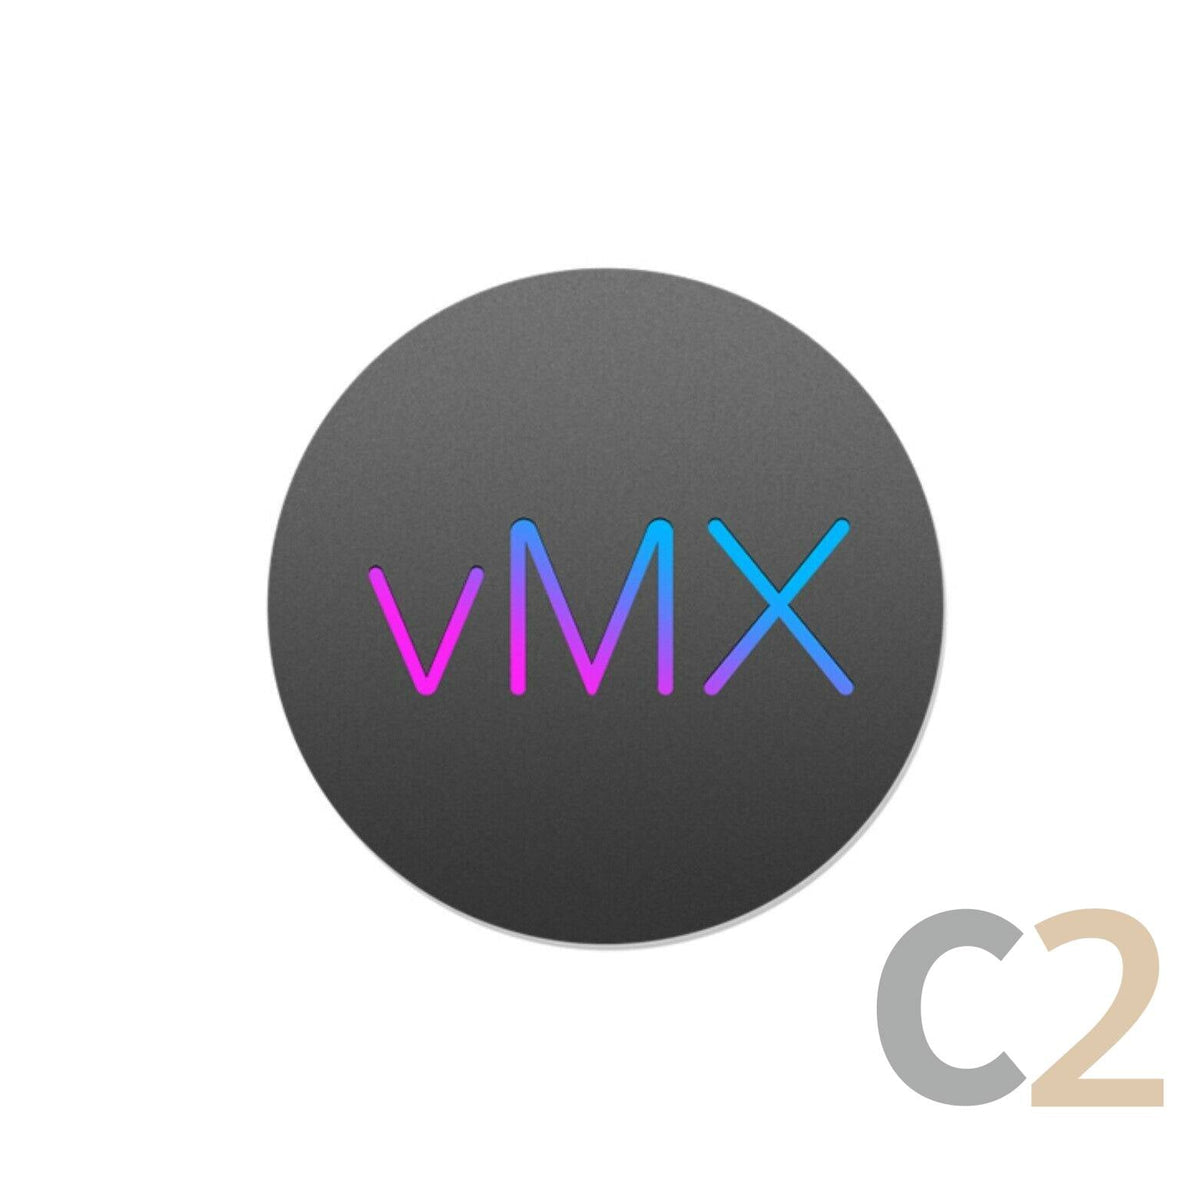 (行貨) MERAKI LIC-VMX-M-ENT-1Y 防毒軟件 100% NEW - C2 Computer